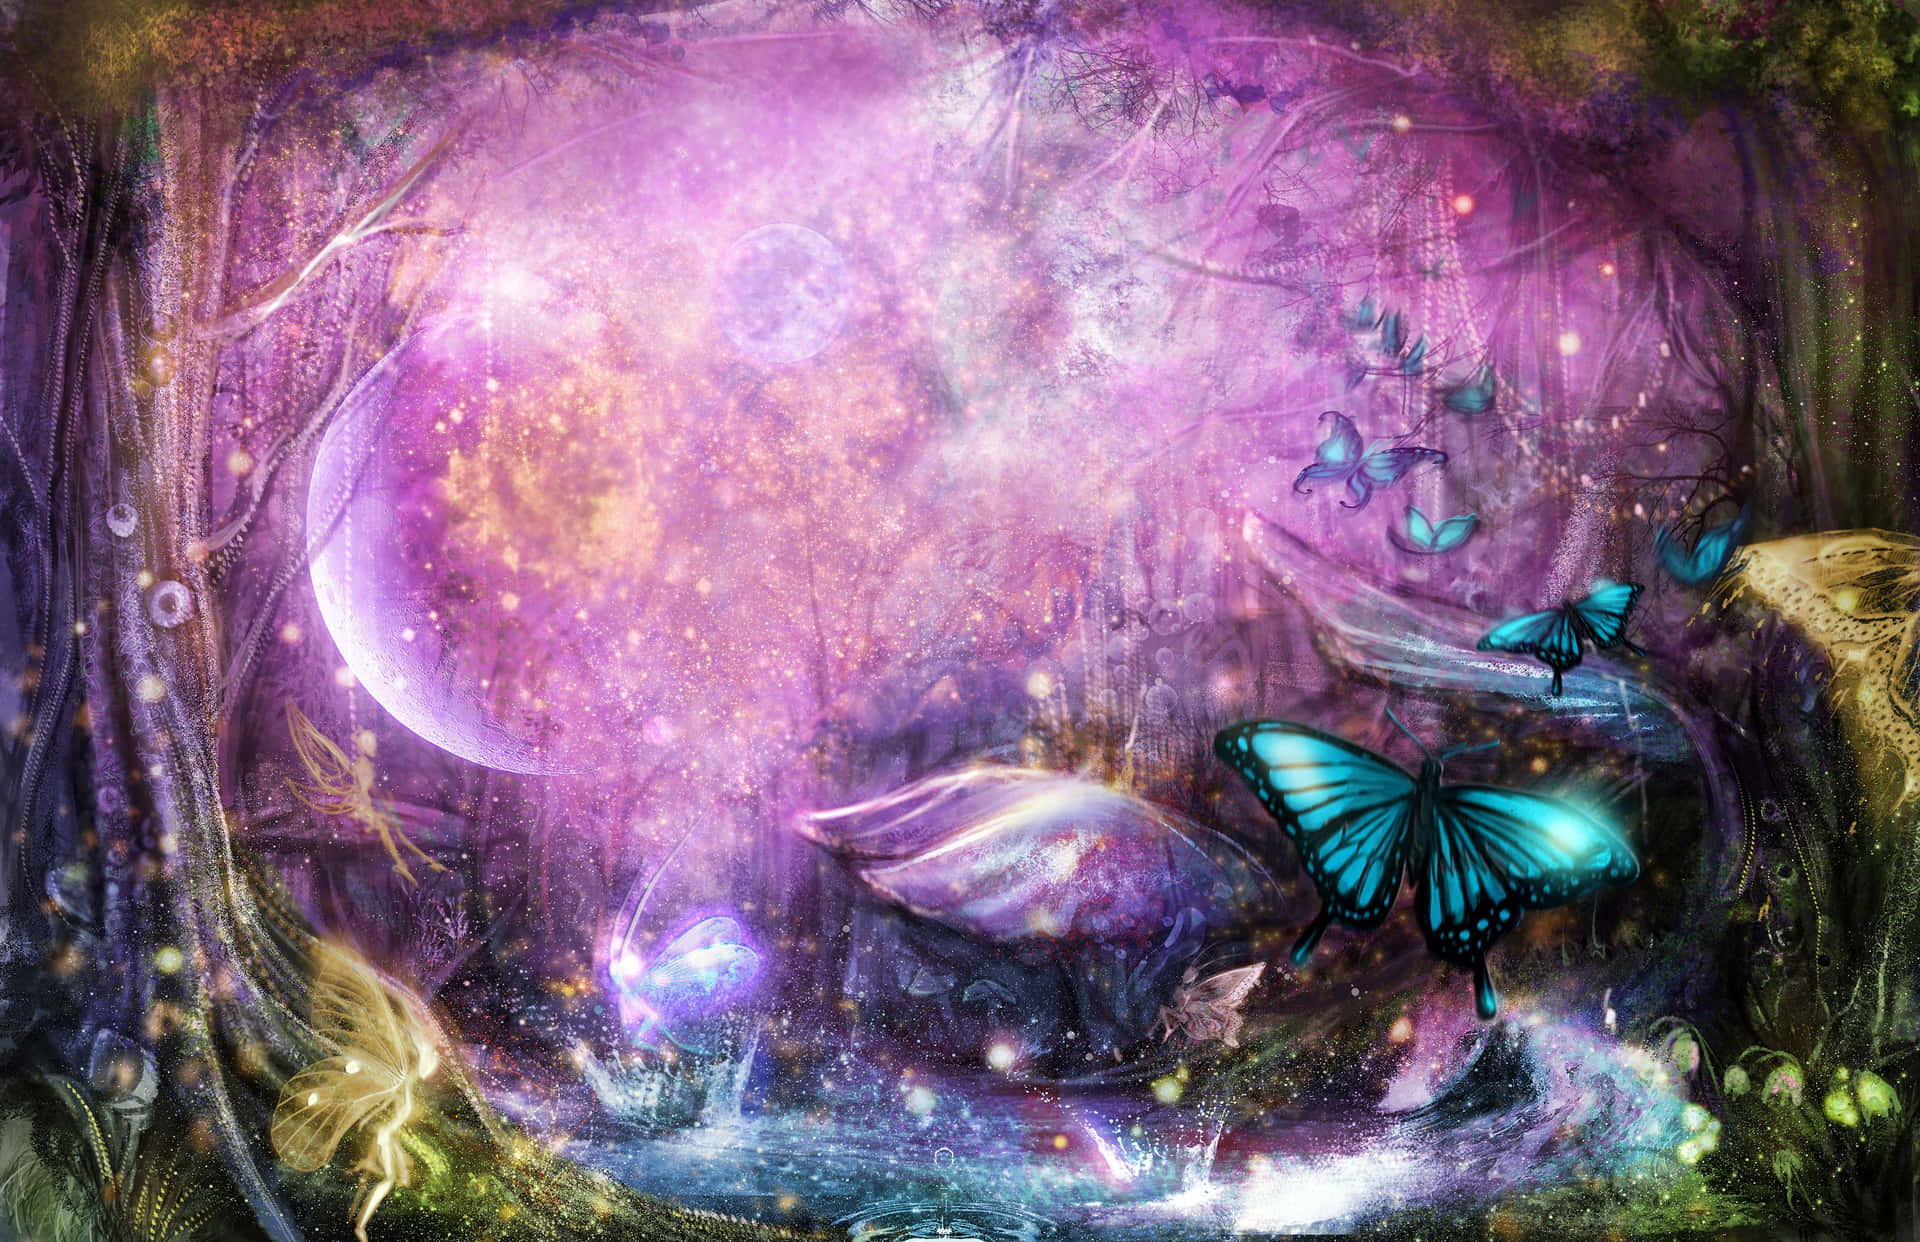 Et fantasi skov med sommerfugle og fe-lys. Wallpaper